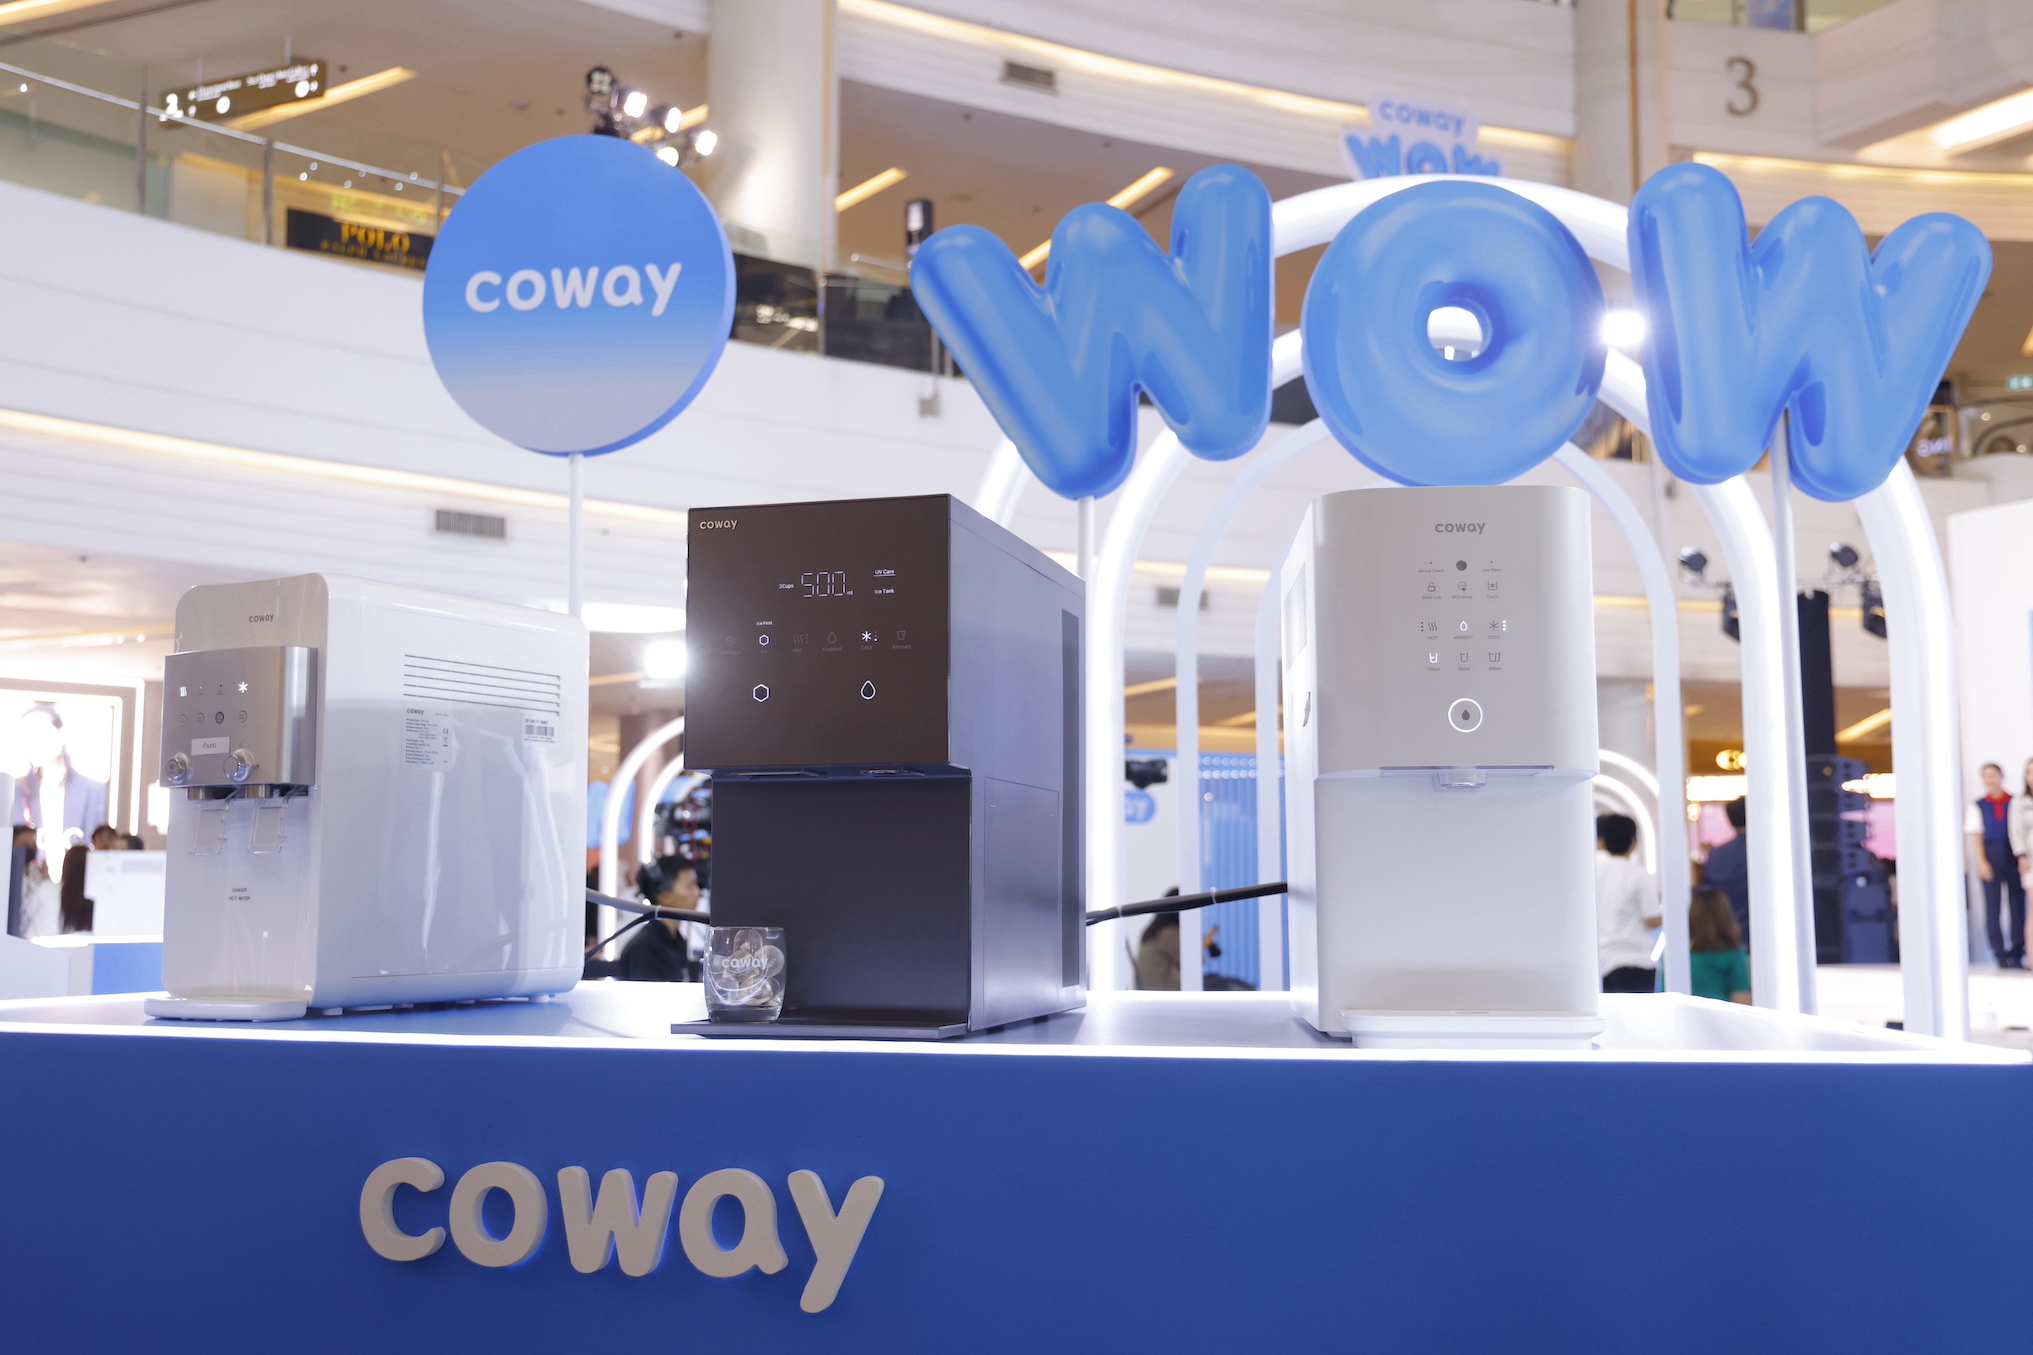 โคเวย์เปิดกลยุทธ์ “WOW Campaign” เขย่าตลาดเครื่องกรองน้ำ ดันยอดซับ ย้ำเบอร์ 1 Subscription เมืองไทย!